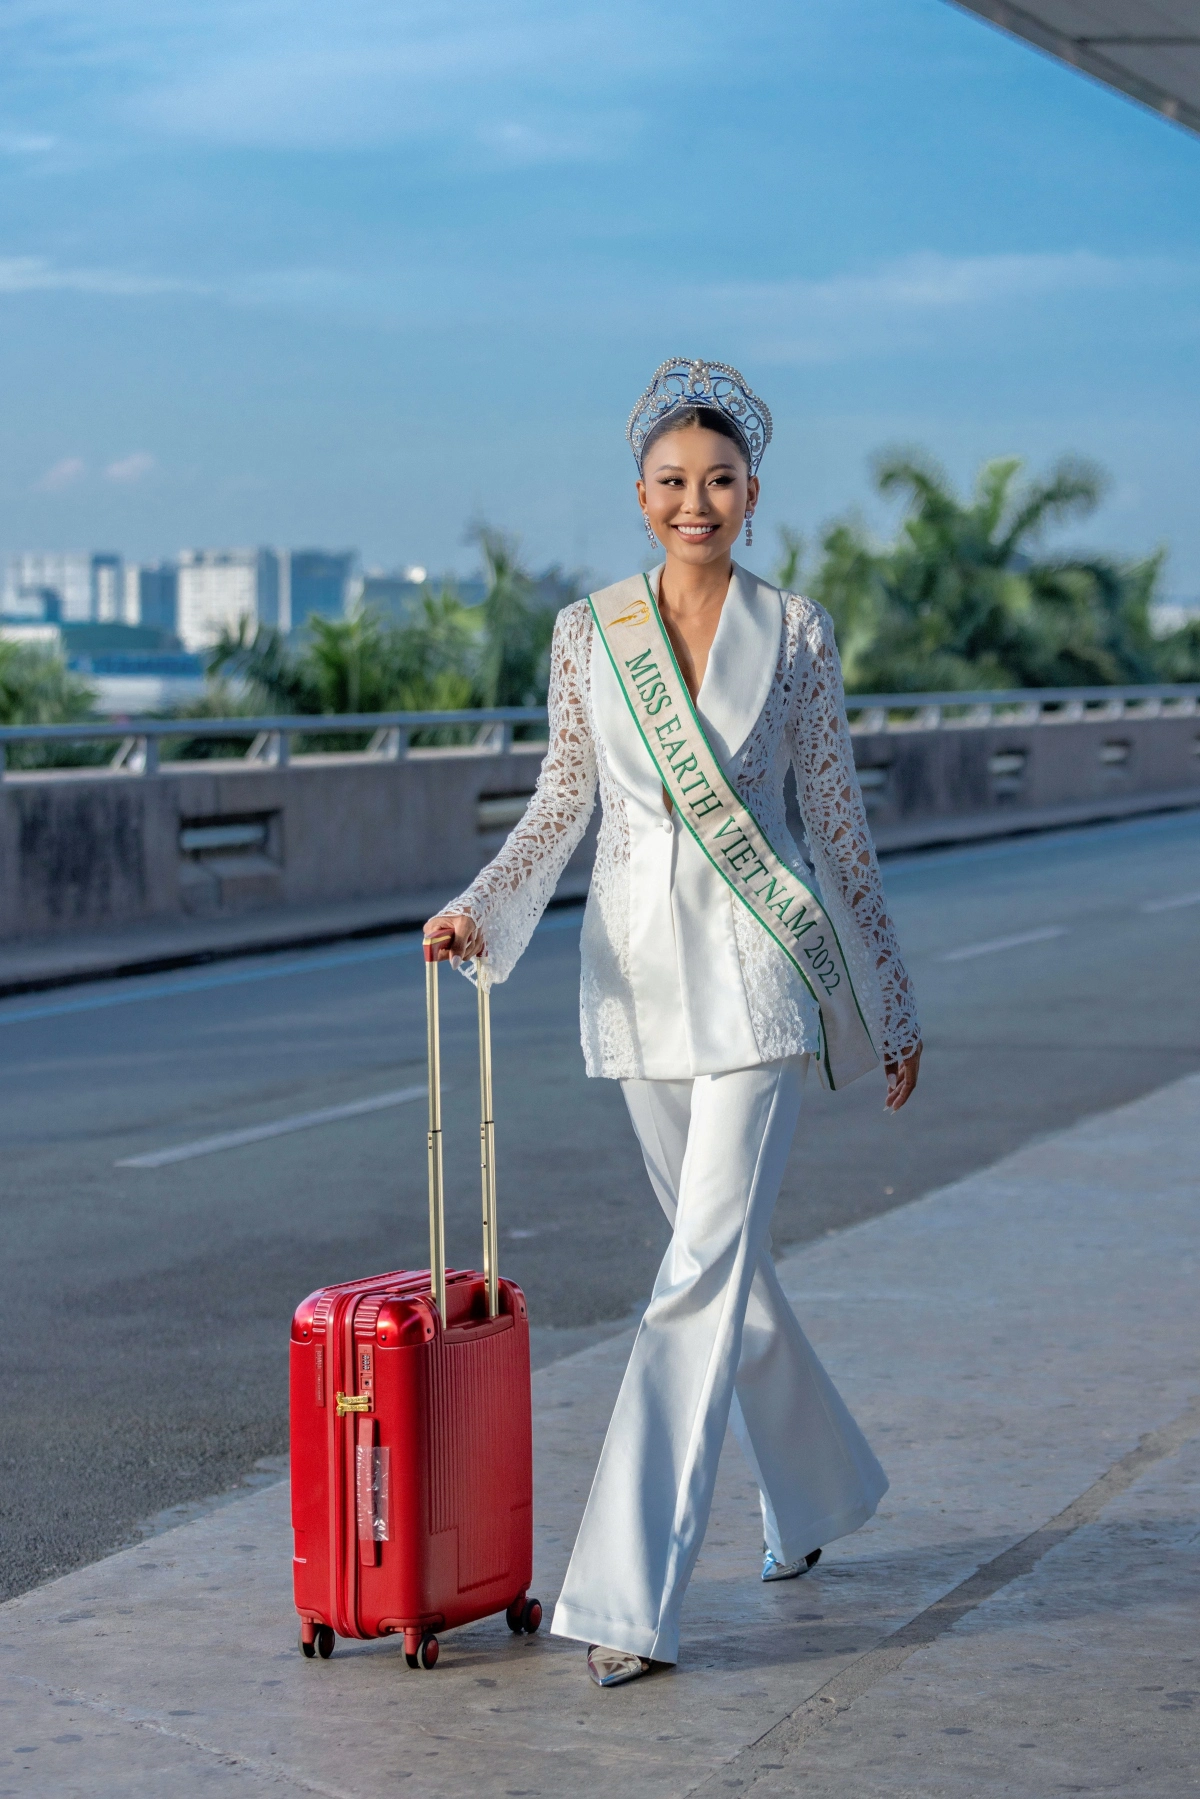 Thạc Thu Thảo sở hữu chiều cao 1,78 m, được khán giả nhận xét có nét giống siêu mẫu Thanh Hằng. Tham gia cuộc thi Hoa hậu các Dân tộc Việt Nam, cô ghi điểm nhờ vóc dáng đẹp, dáng vẻ tự tin và khả năng làm chủ sân khấu. Cô từng đại diện Việt Nam tham gia Miss Earth 2022 tổ chức tại Philippines.